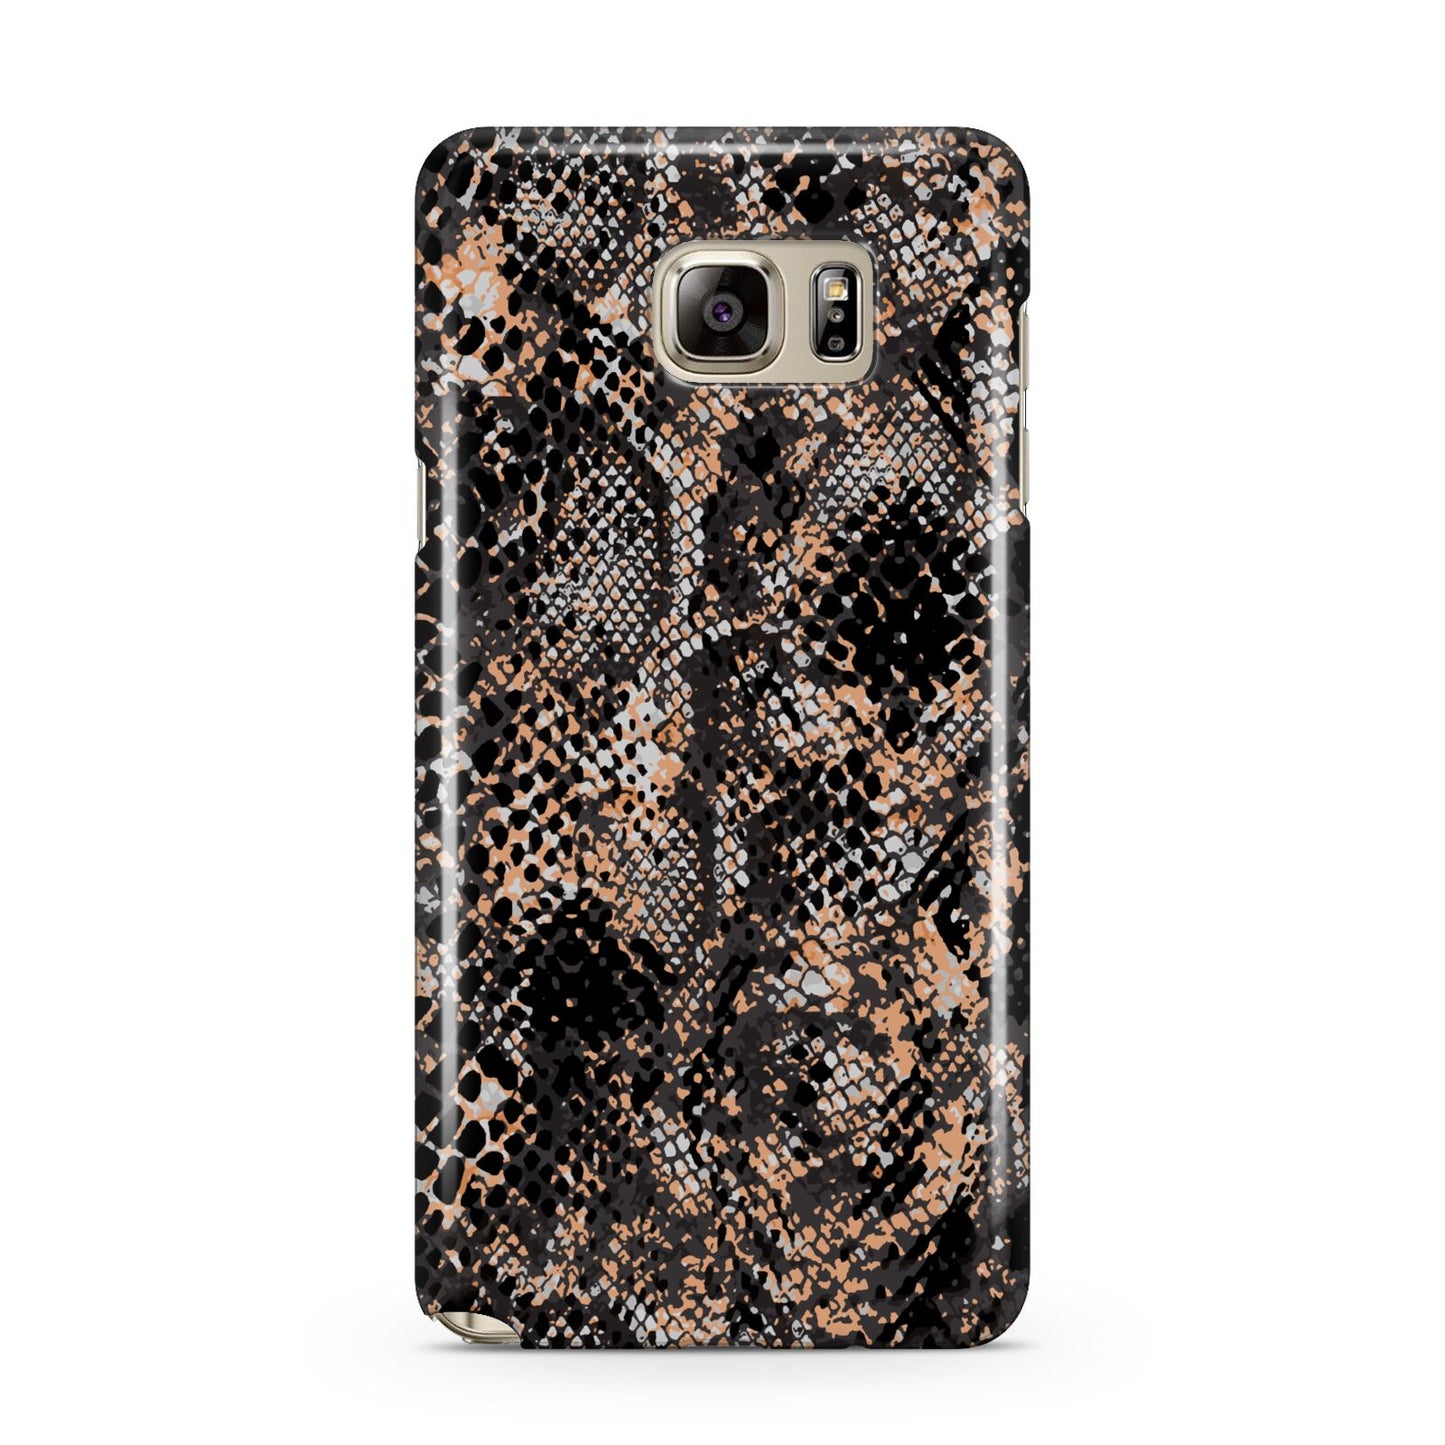 Snakeskin Print Samsung Galaxy Note 5 Case